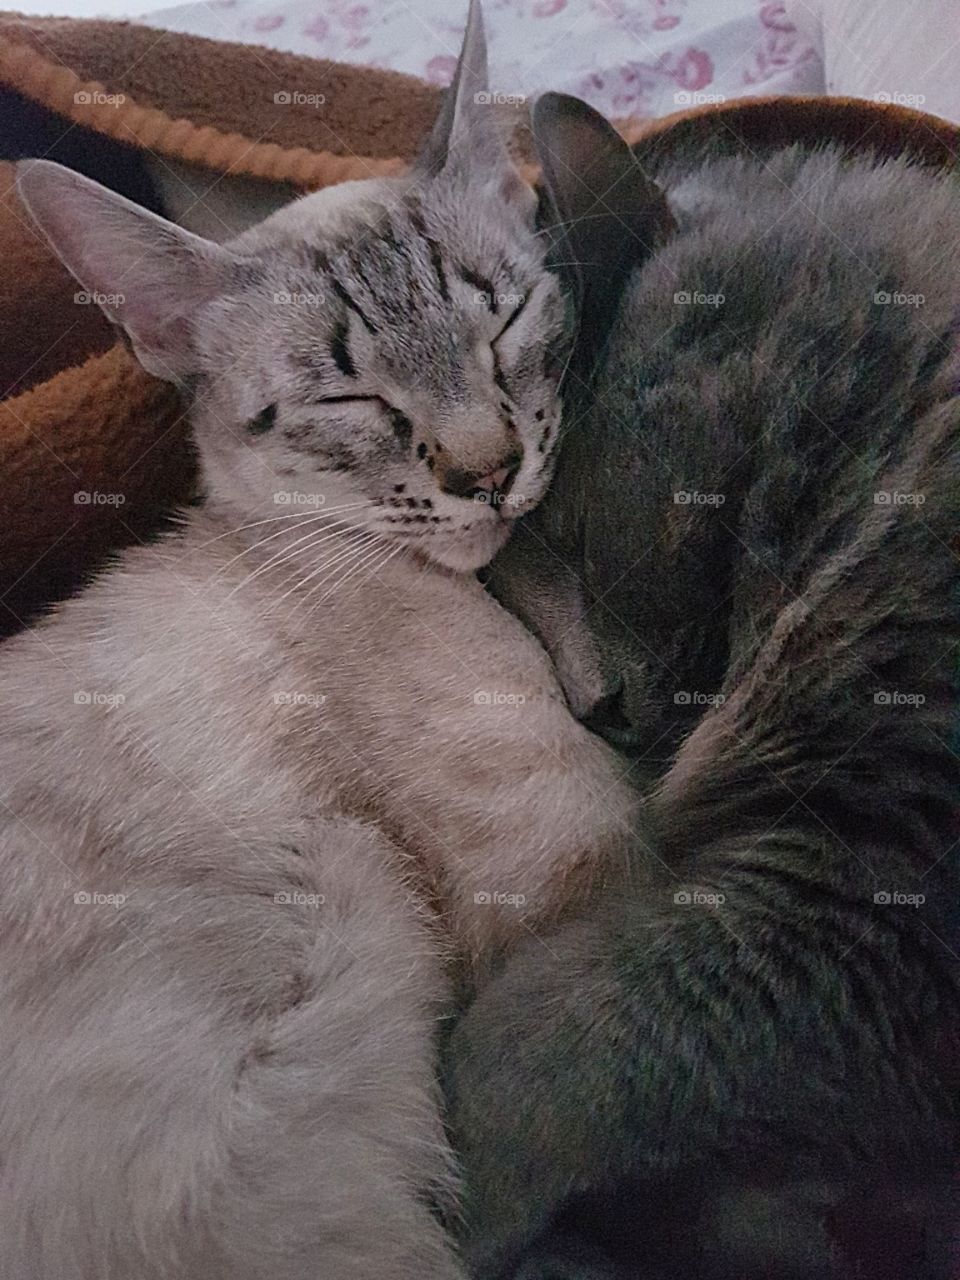 Mis gatas, adoptadas las dos, aunque son muy poderosas las dos se quieren mucho.😻❤